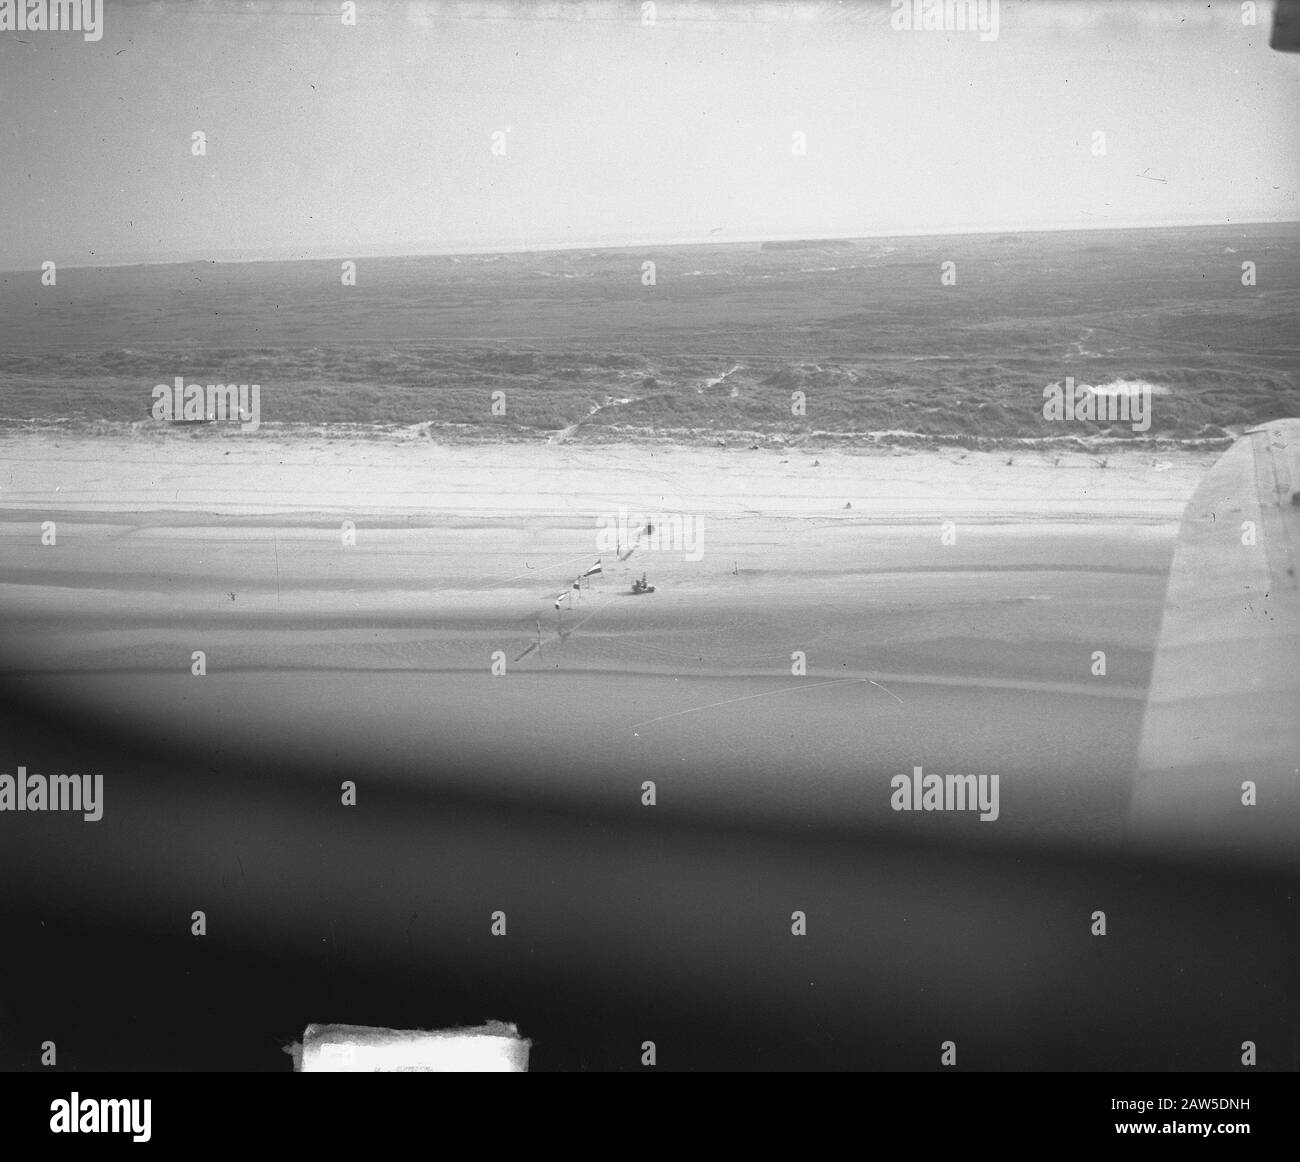 Rekordflug Gloster Meteor über Ameland Anmerkung: Aufnahme von De Havilland DH89 Dominion Datum: 28. August 1949 Standort: Ameland, Friesland Schlüsselwörter: Luftfahrtrekorde, Name der Flugzeugperson: Gloster Meteor Stockfoto